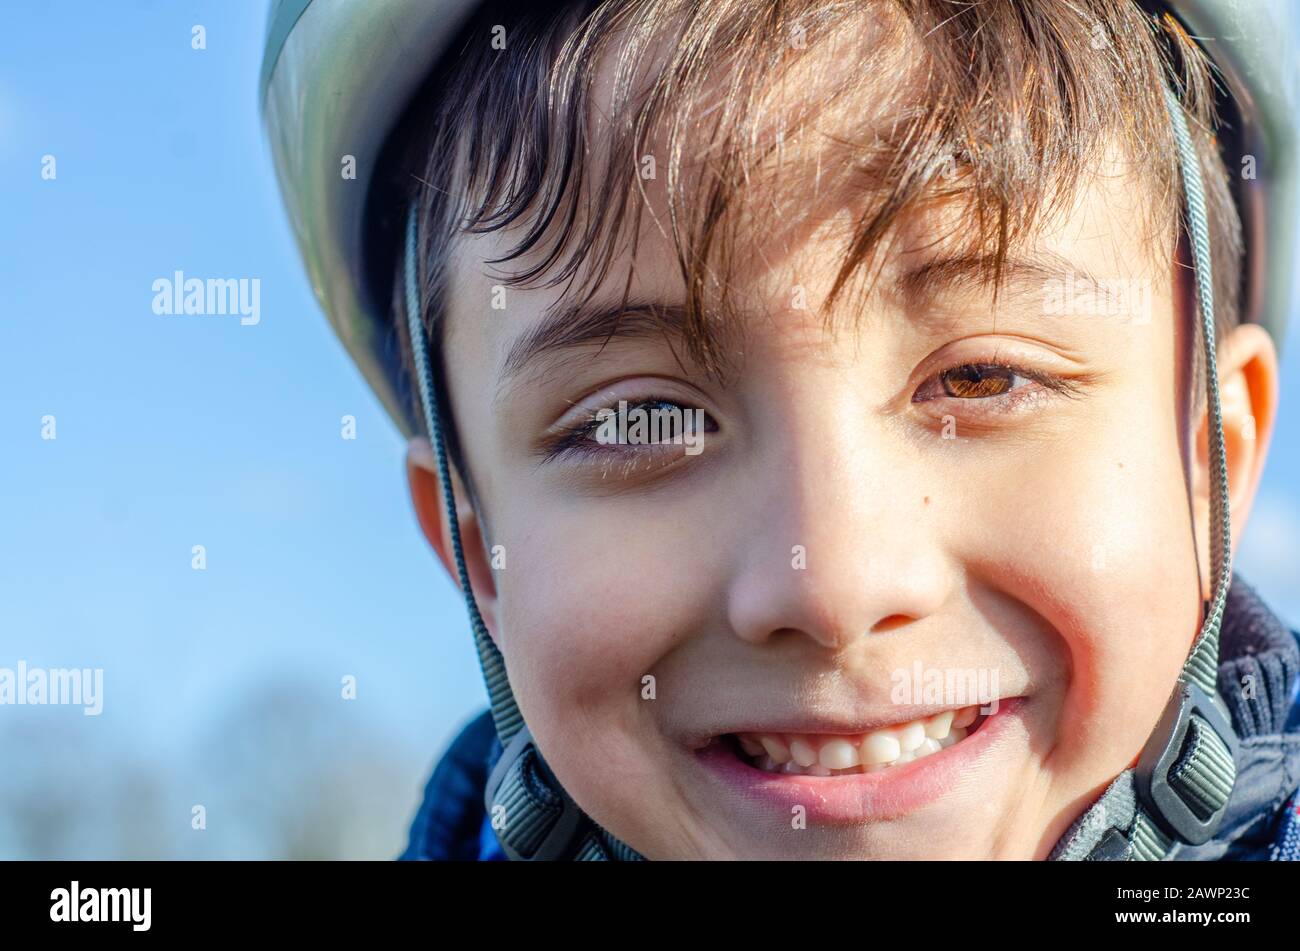 Porträt eines jungen Jungen im Freien, der einen Fahrradhelm trägt und lächelt. Stockfoto